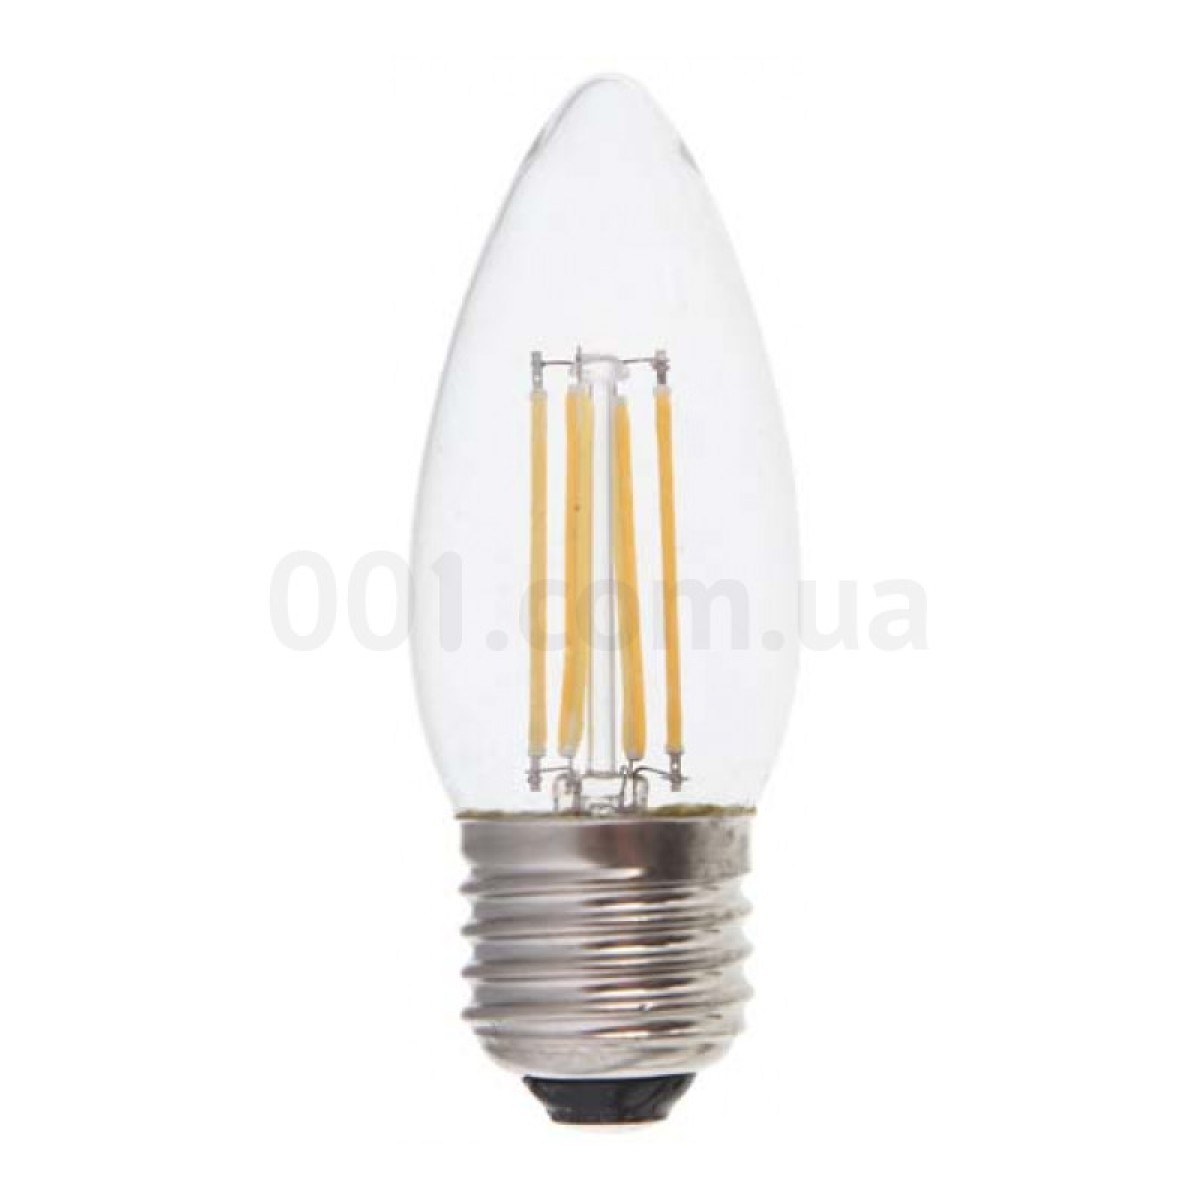 Светодиодная лампа LB-58 C37 (свеча) филамент 4Вт 4000K E27, Feron 98_98.jpg